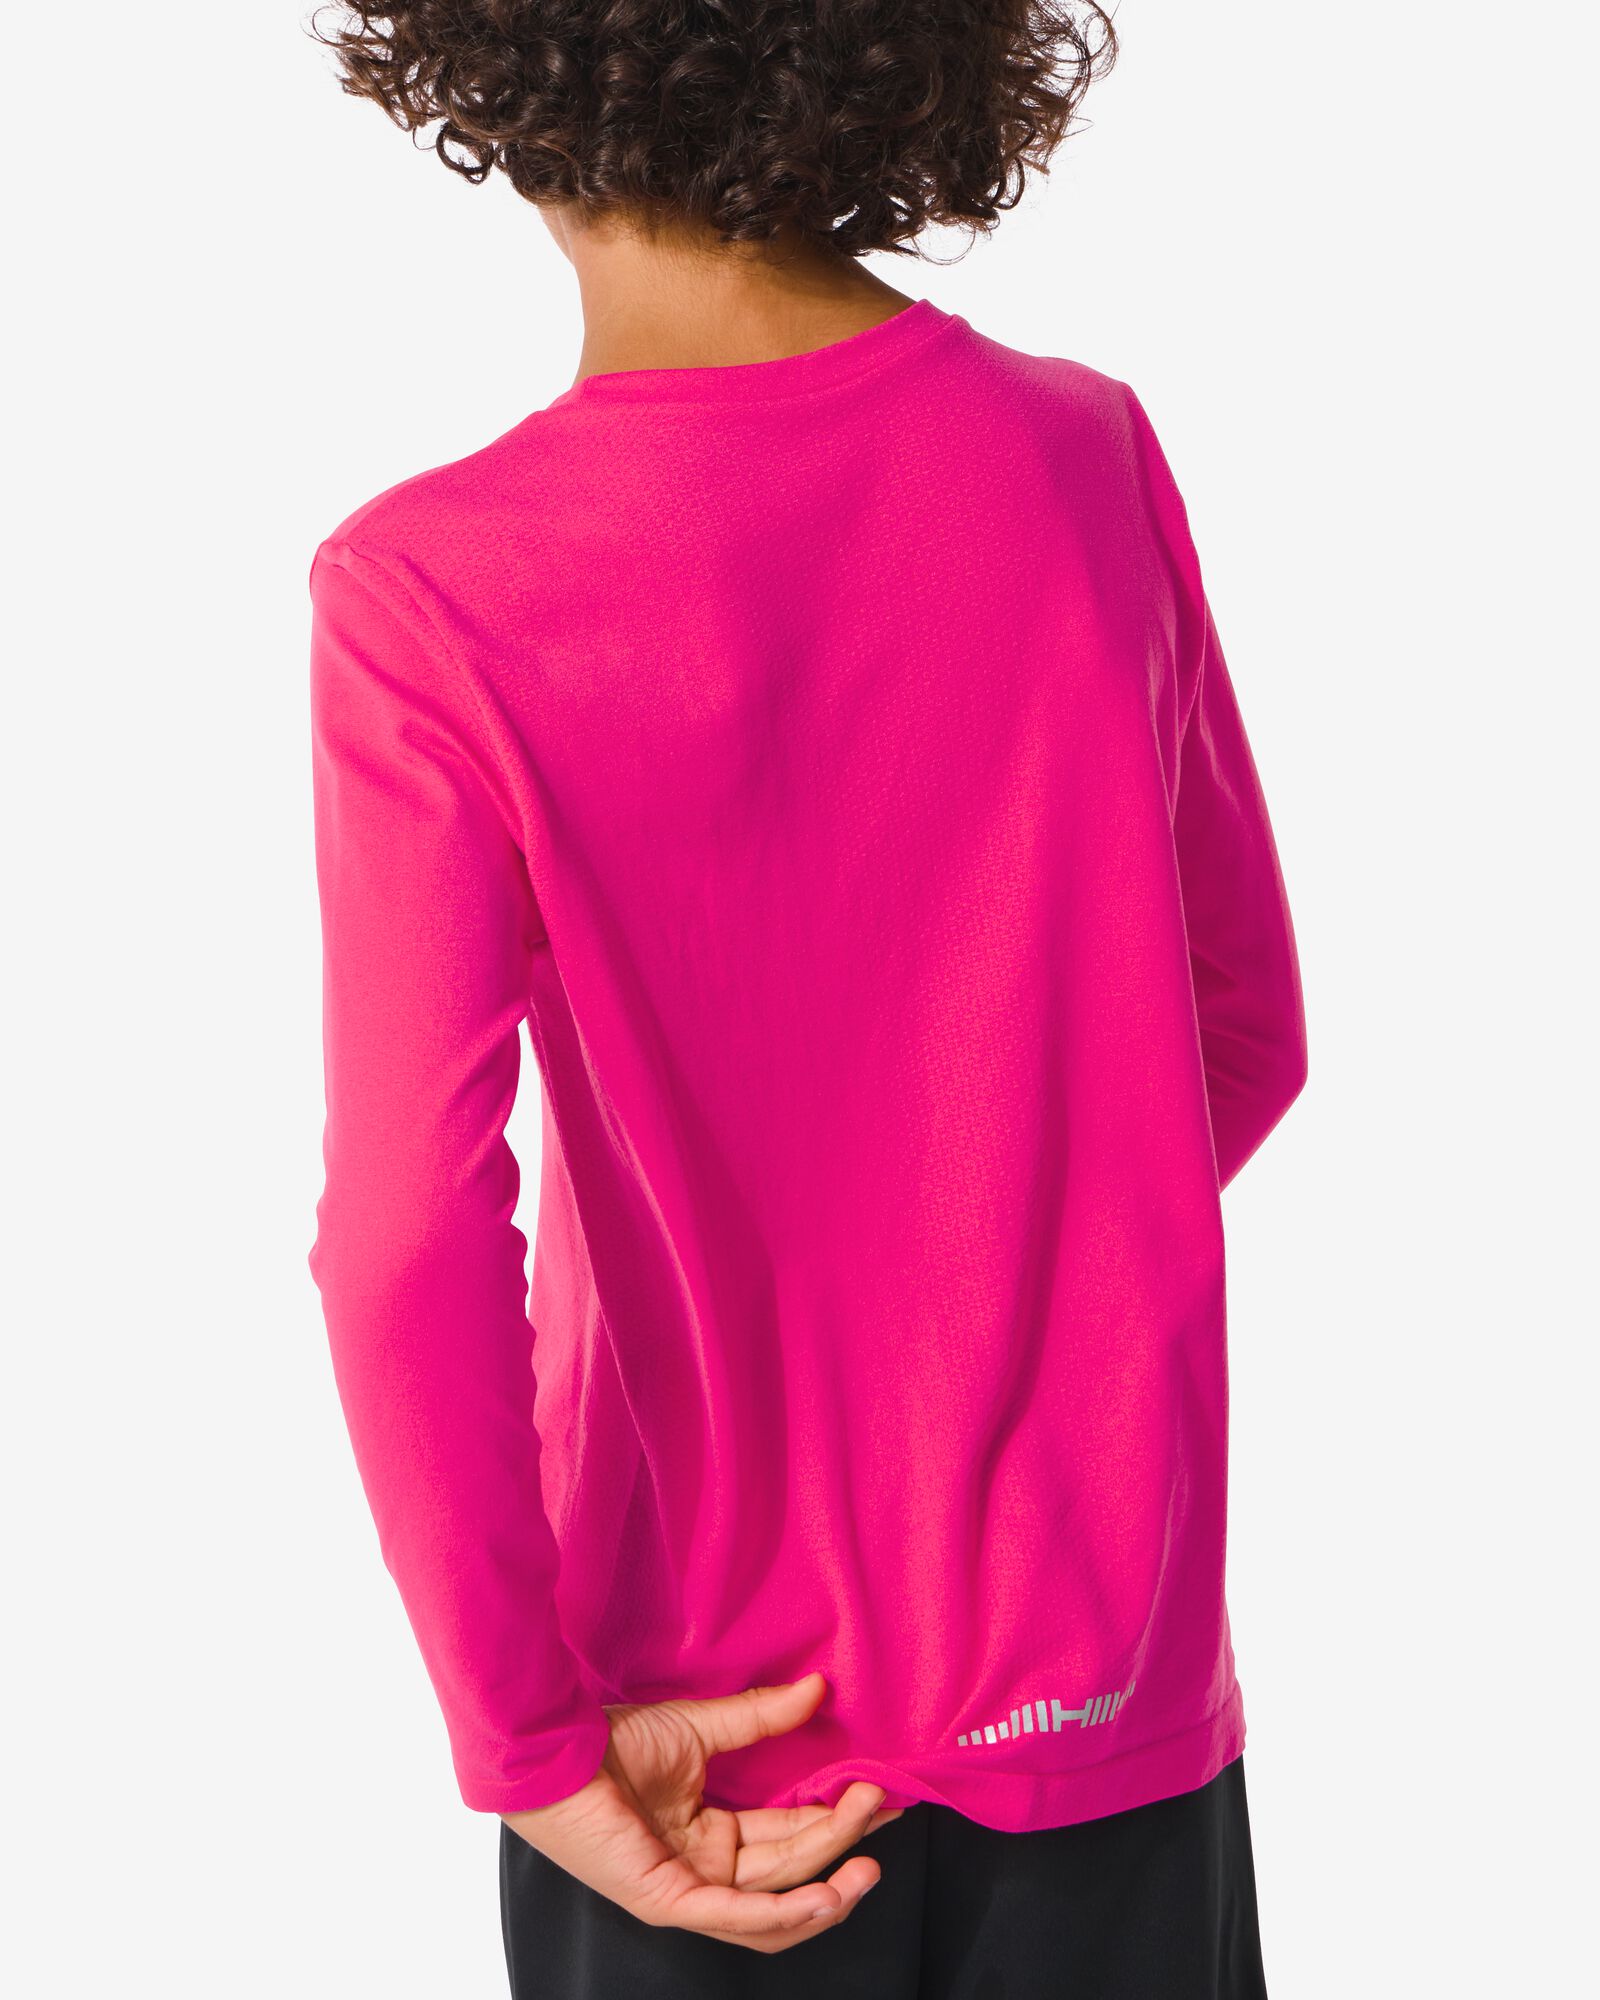 naadloos kinder sportshirt roze 158/164 - 36090365 - HEMA